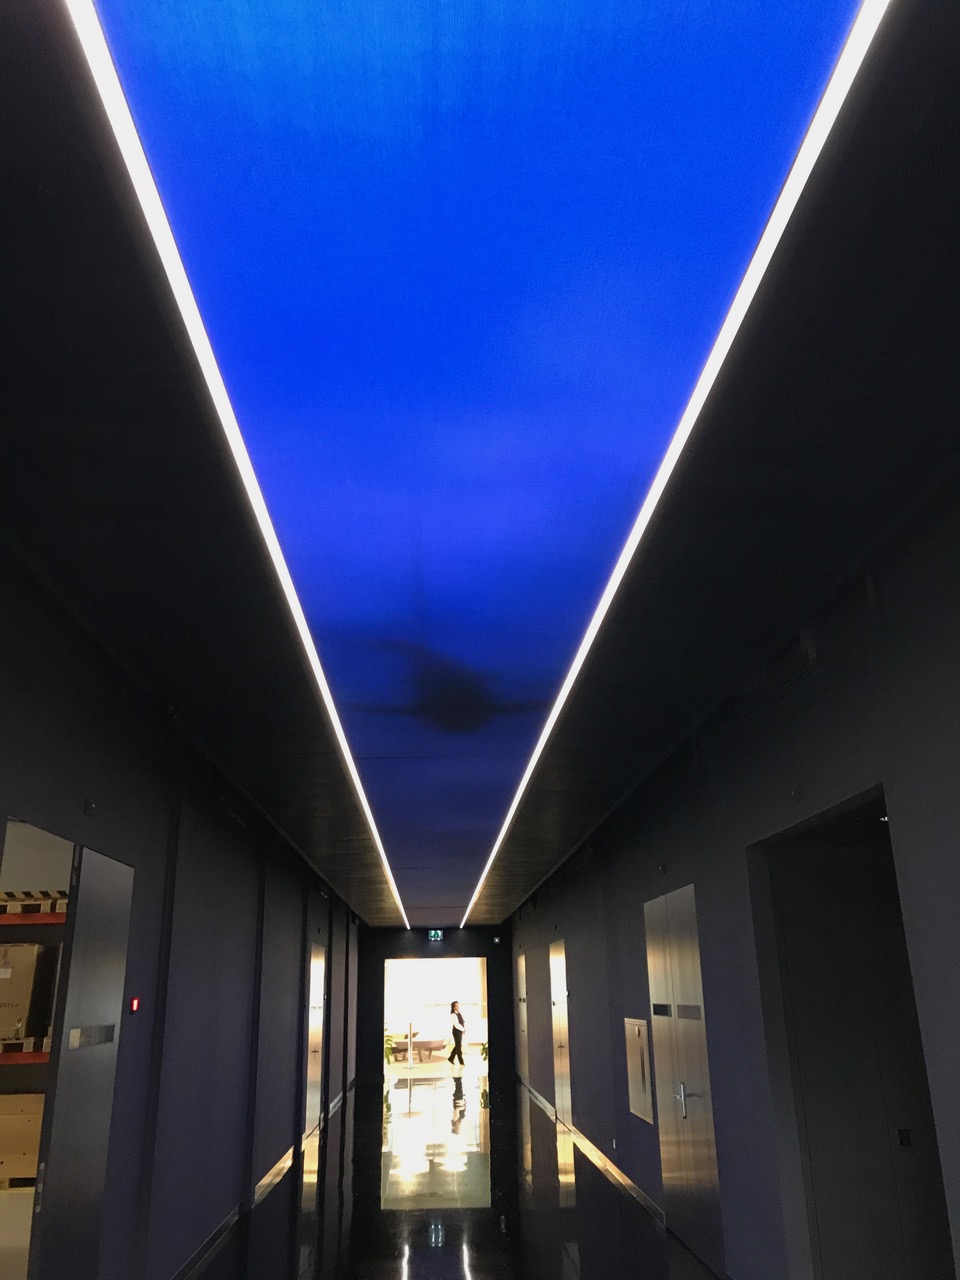 Professionelle LED Beleuchtung in einem Einkaufszentrum